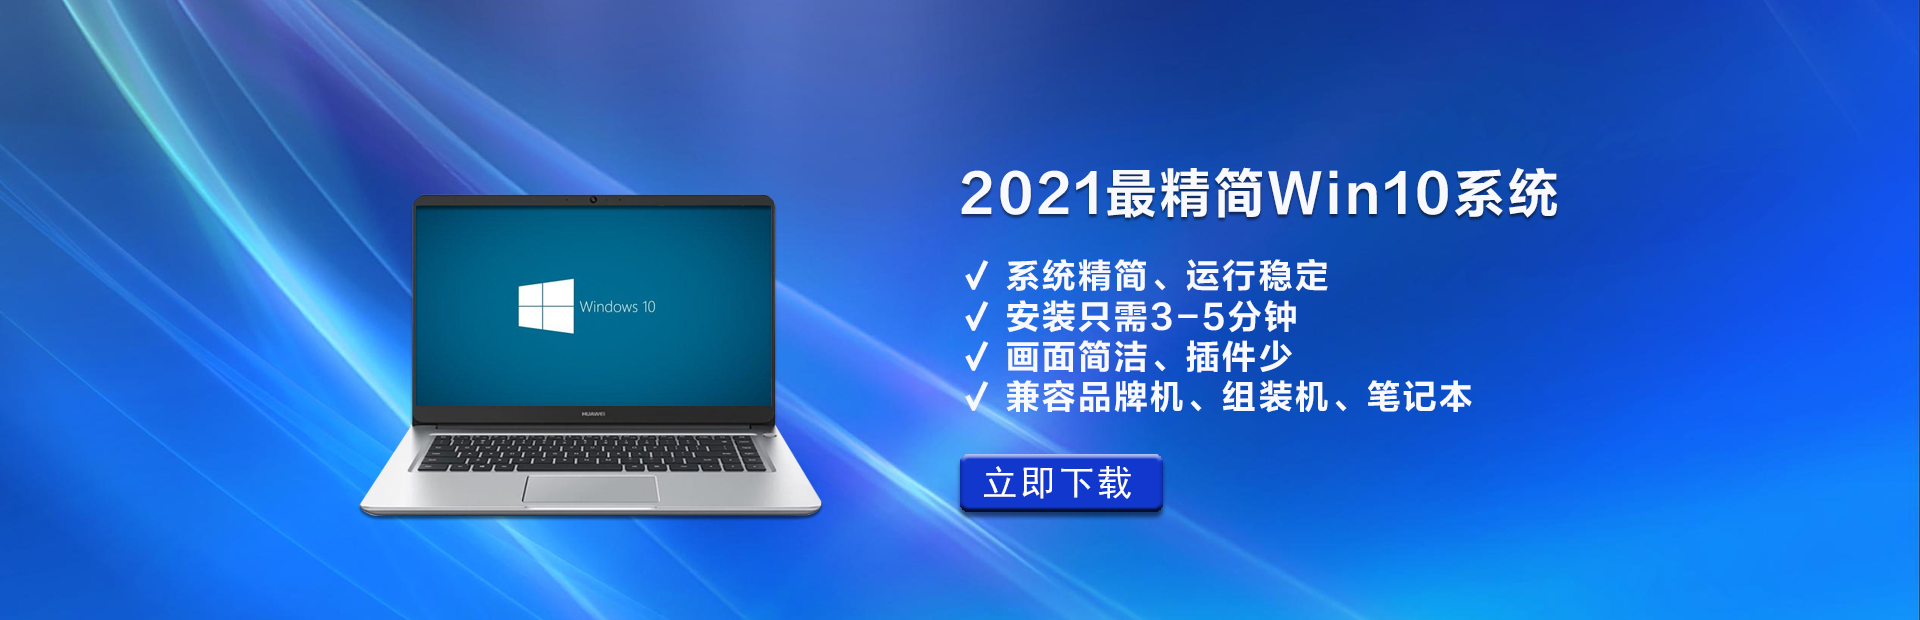 2021最精简Win10系统大全